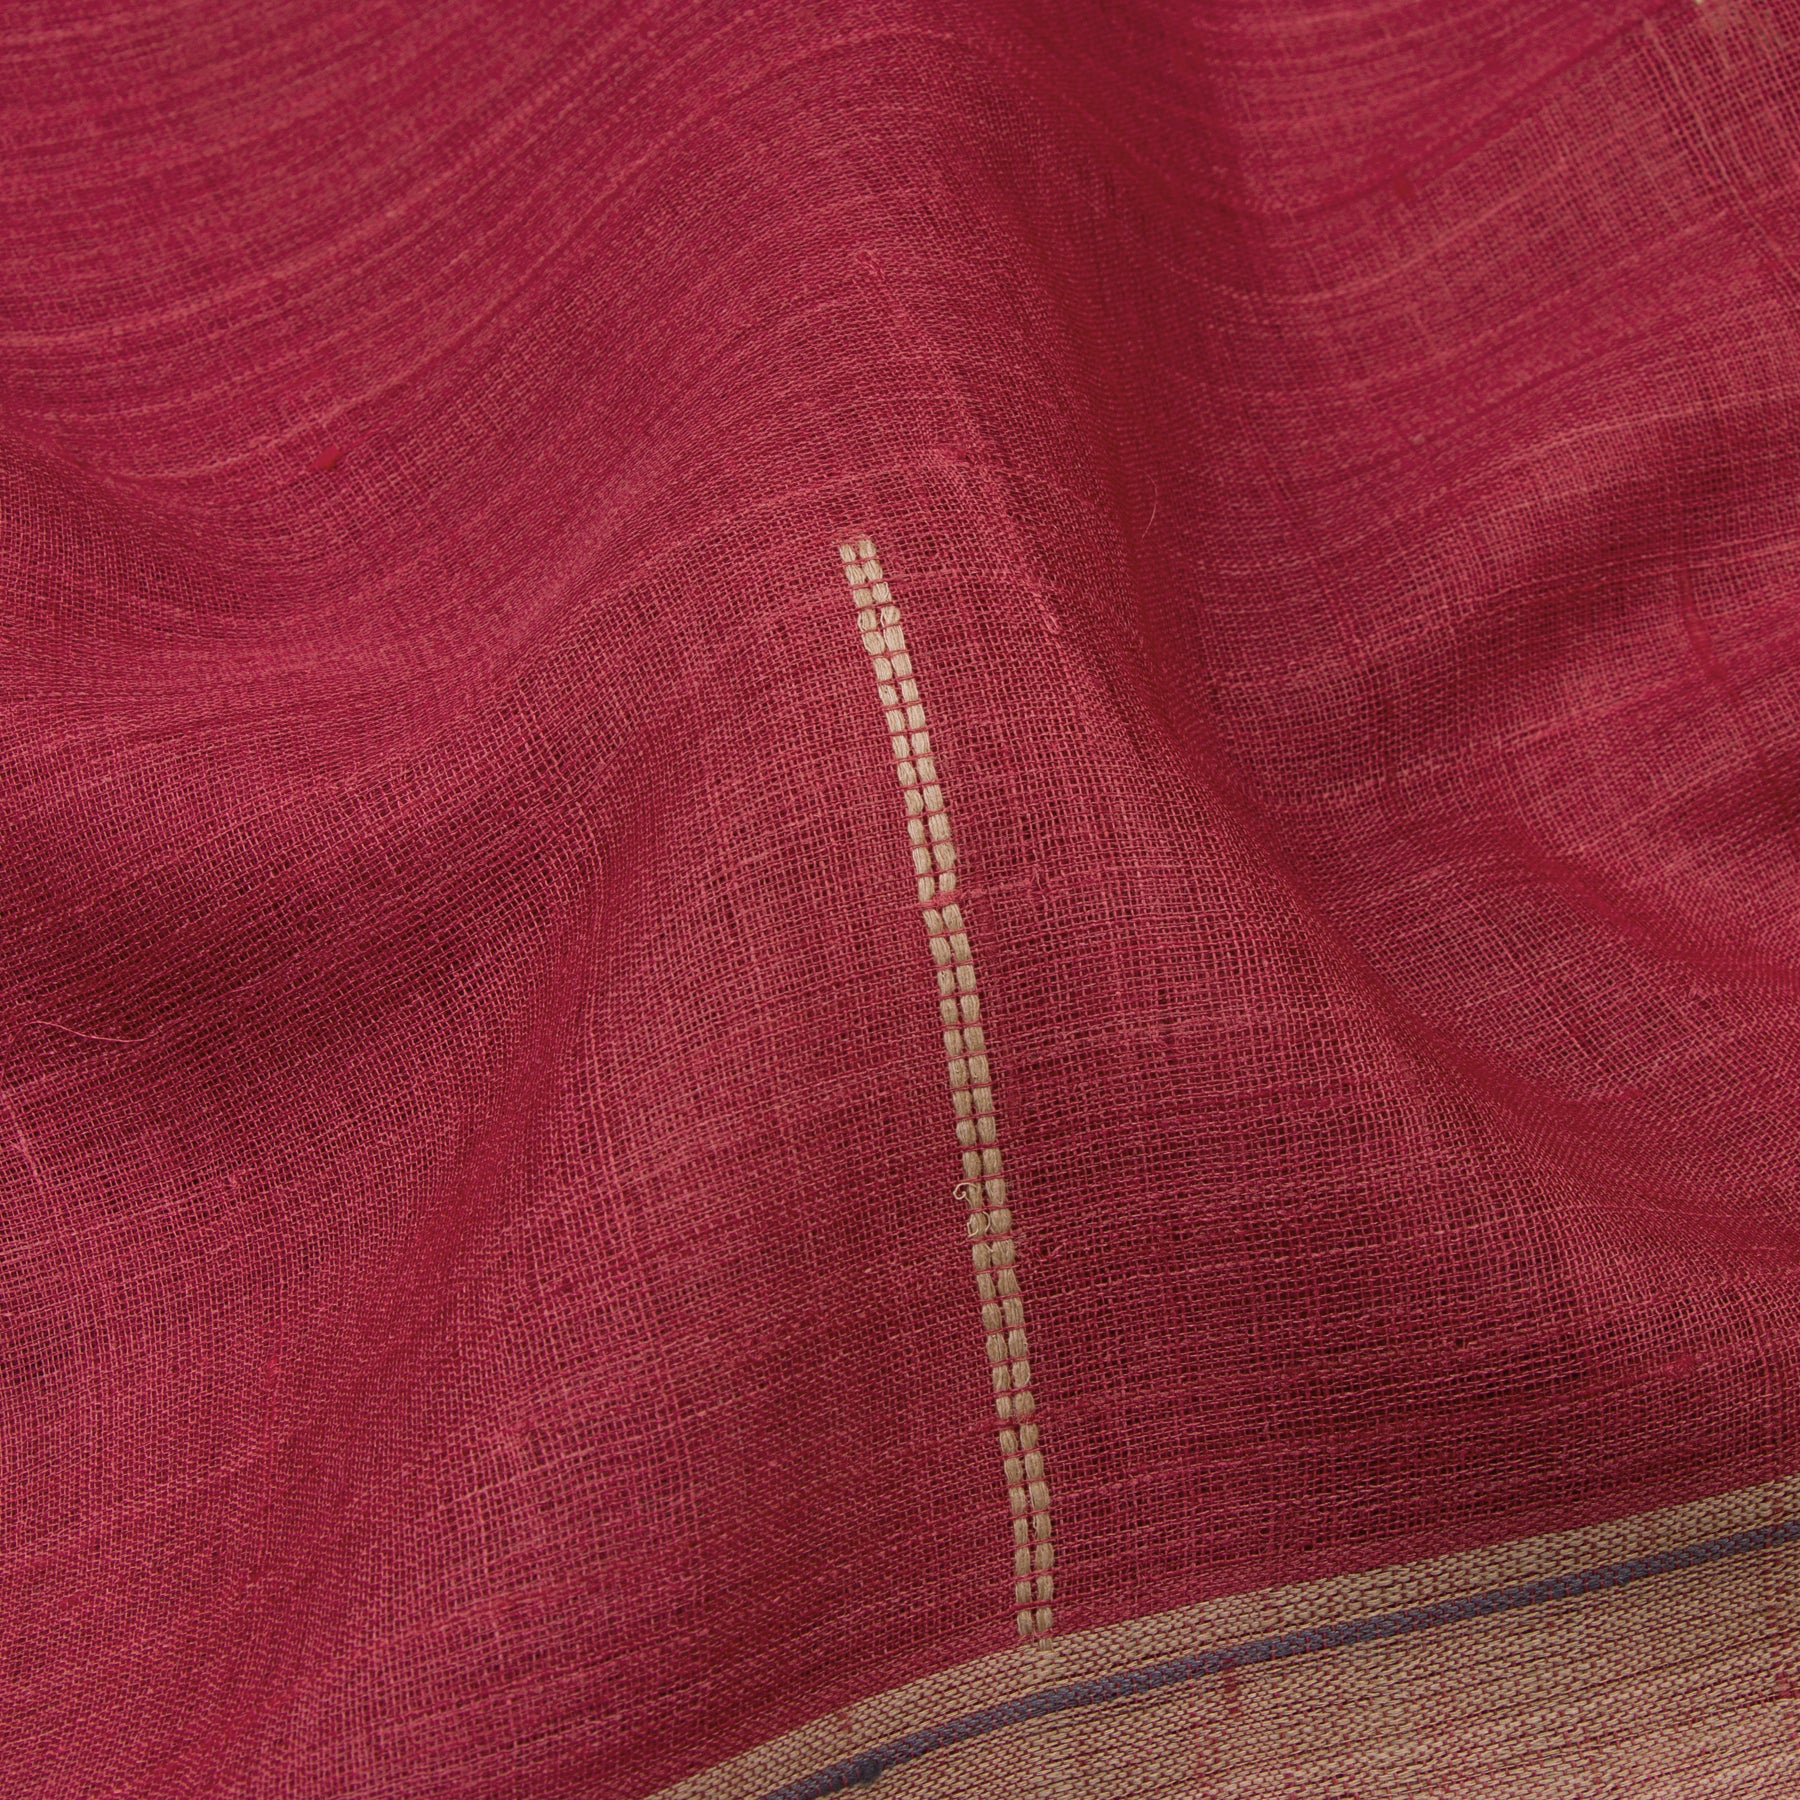 Pradeep Pillai Tussore Sari 22-008-HS002-00304 - Fabric View